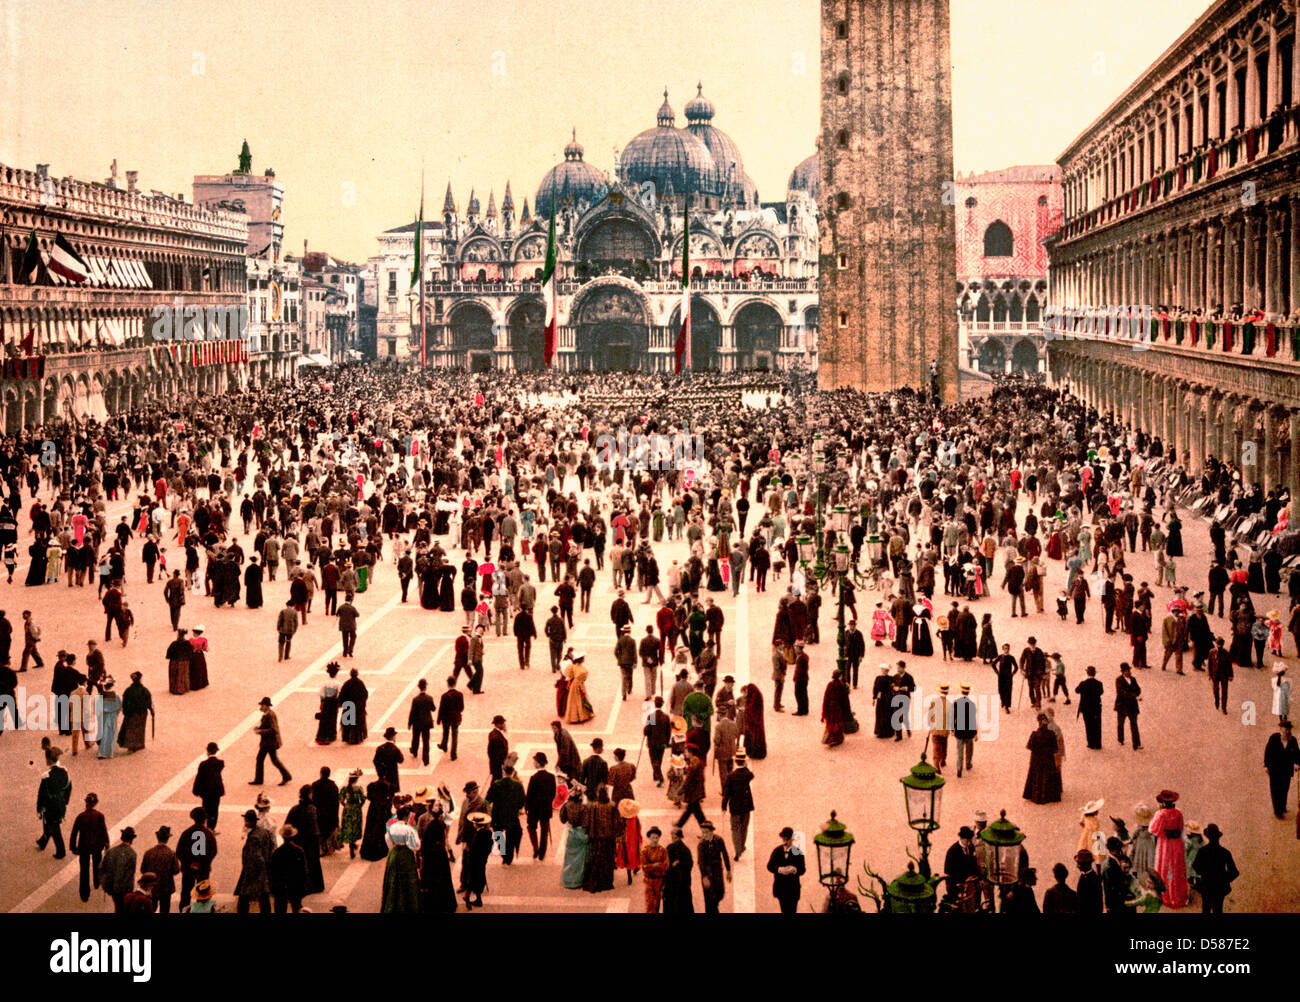 Concert à St Mark's Place, Venise, Italie, vers 1900 Banque D'Images